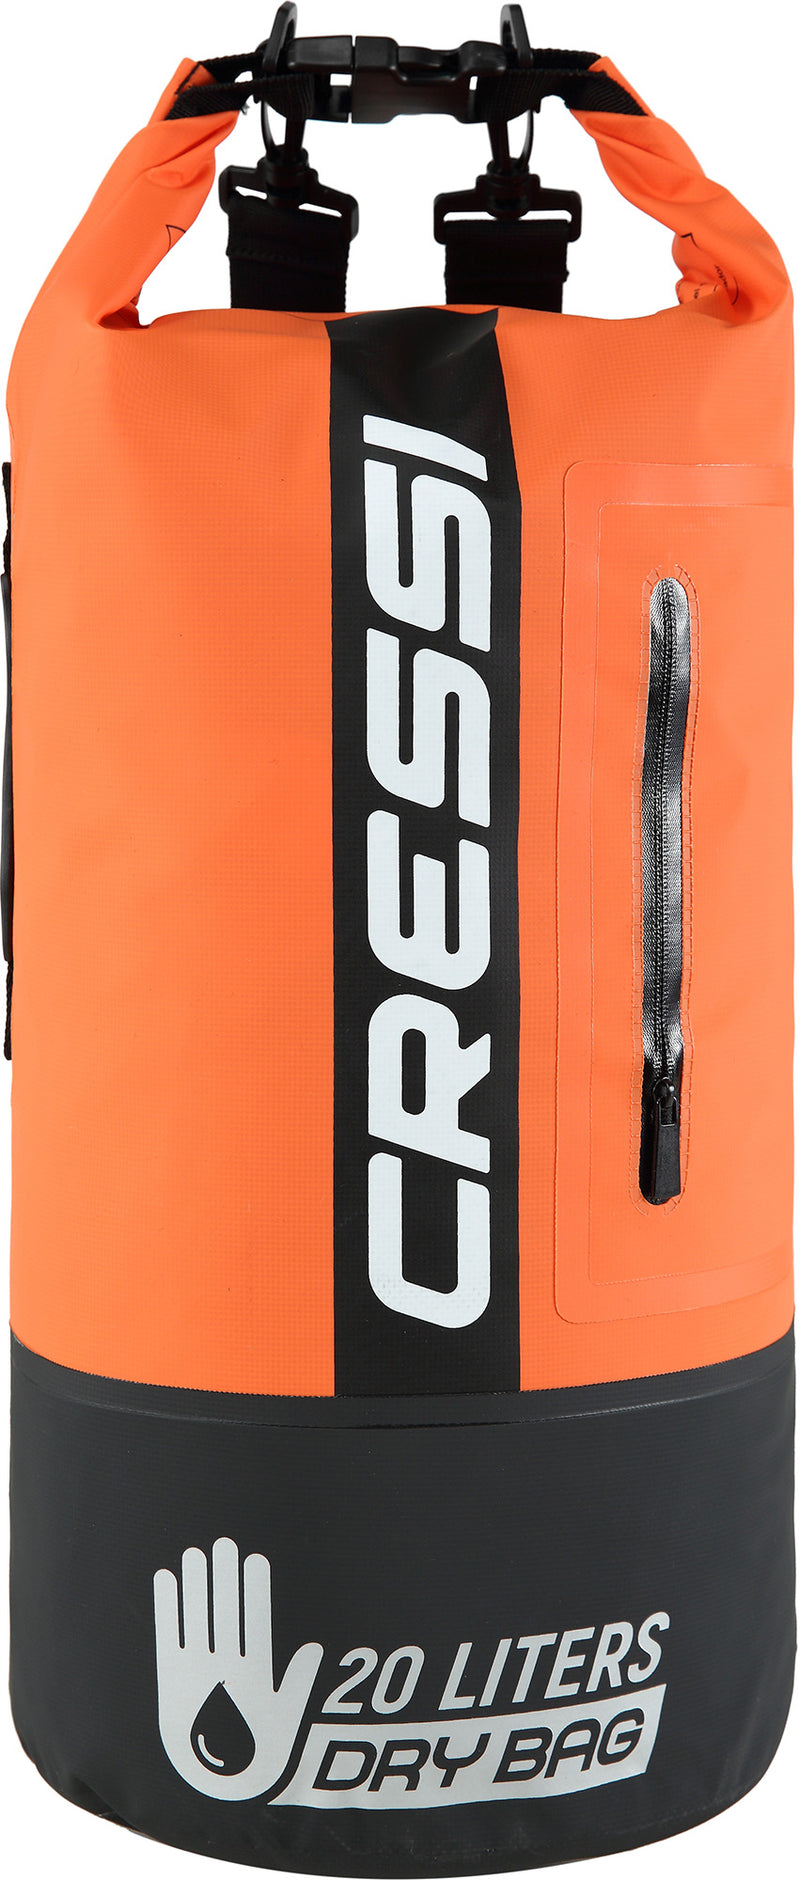 Premium Dry Bag - Cressi